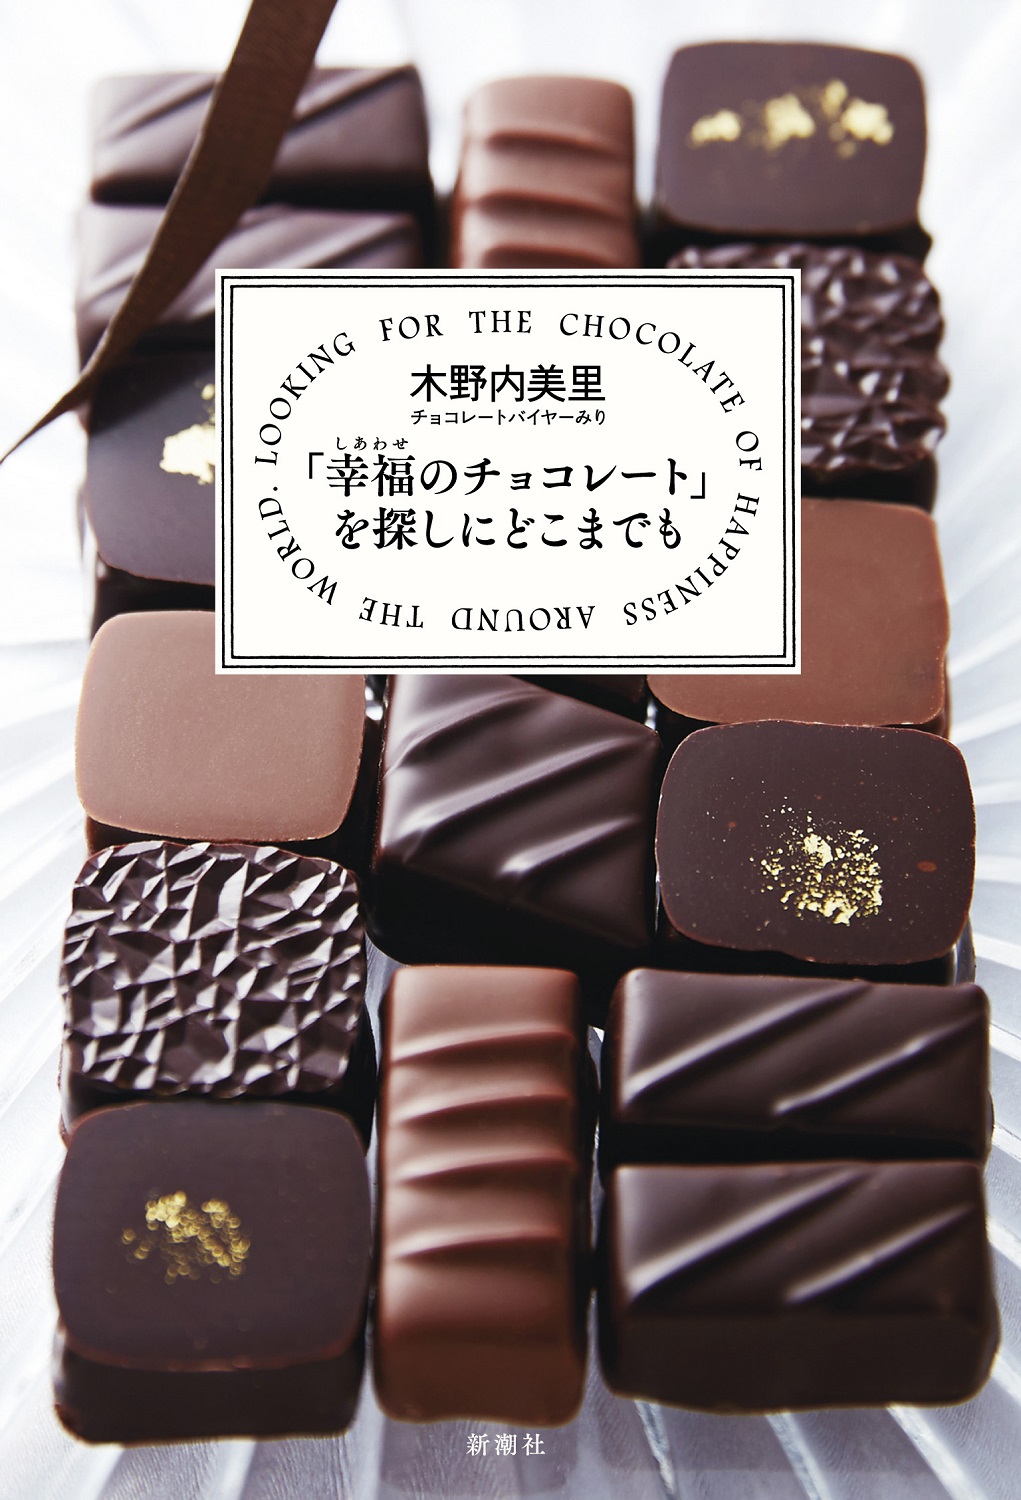 オンラインセミナーとチョコの定期便がセットになった「幸福のチョコレートメンバーサロン」第二期メンバーの募集を「幸福（しあわせ）のチョコレート®」が開始のサブ画像12